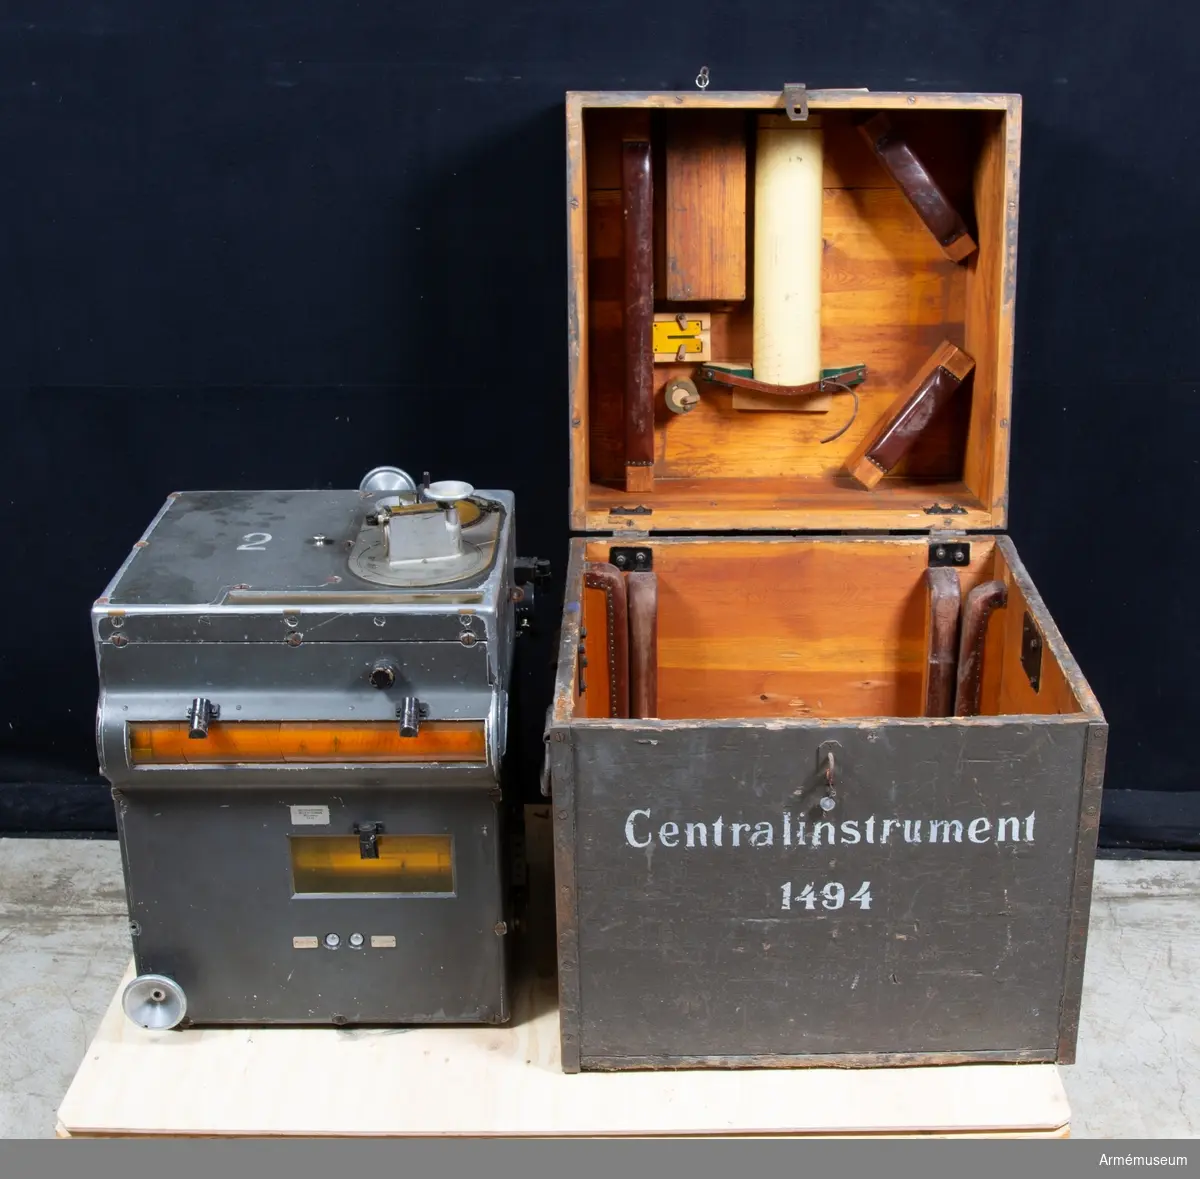 Grupp F III.
Centralinstrument nr 1494, i låda.